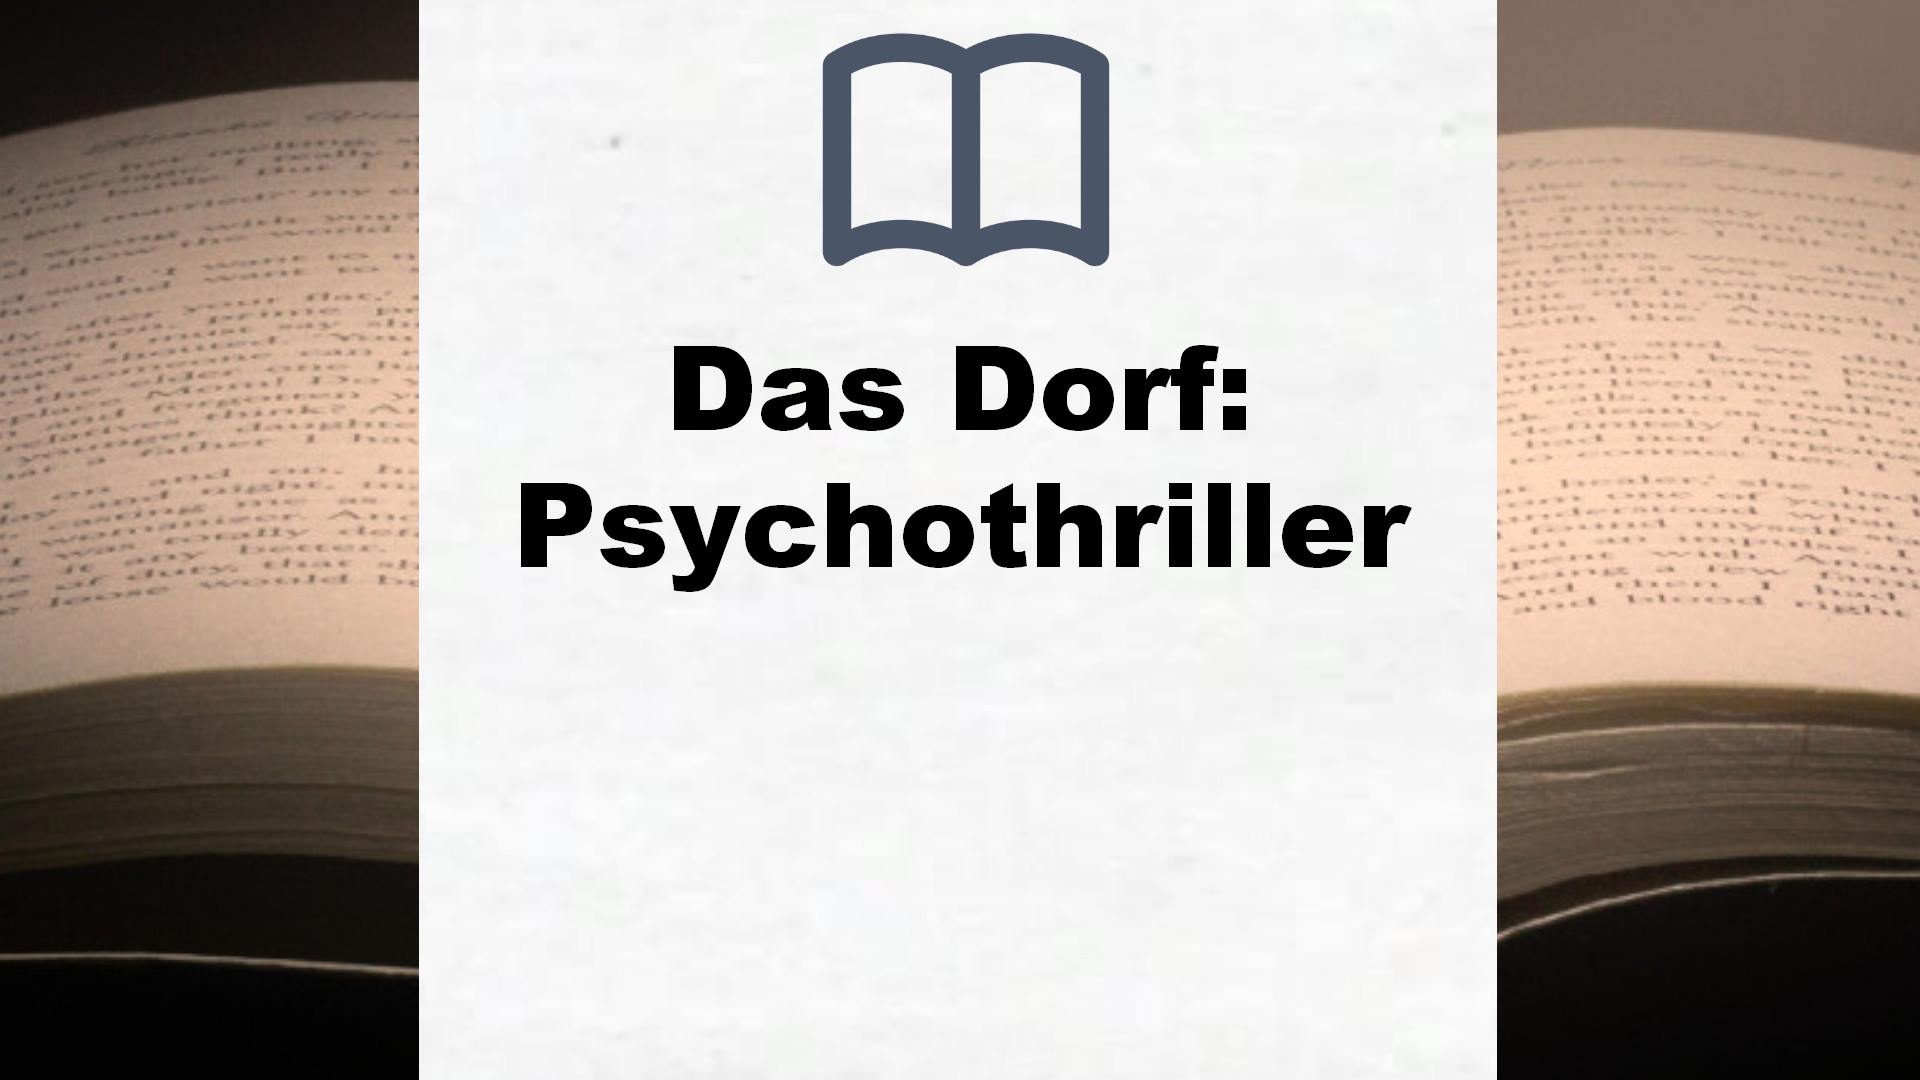 Das Dorf: Psychothriller – Buchrezension